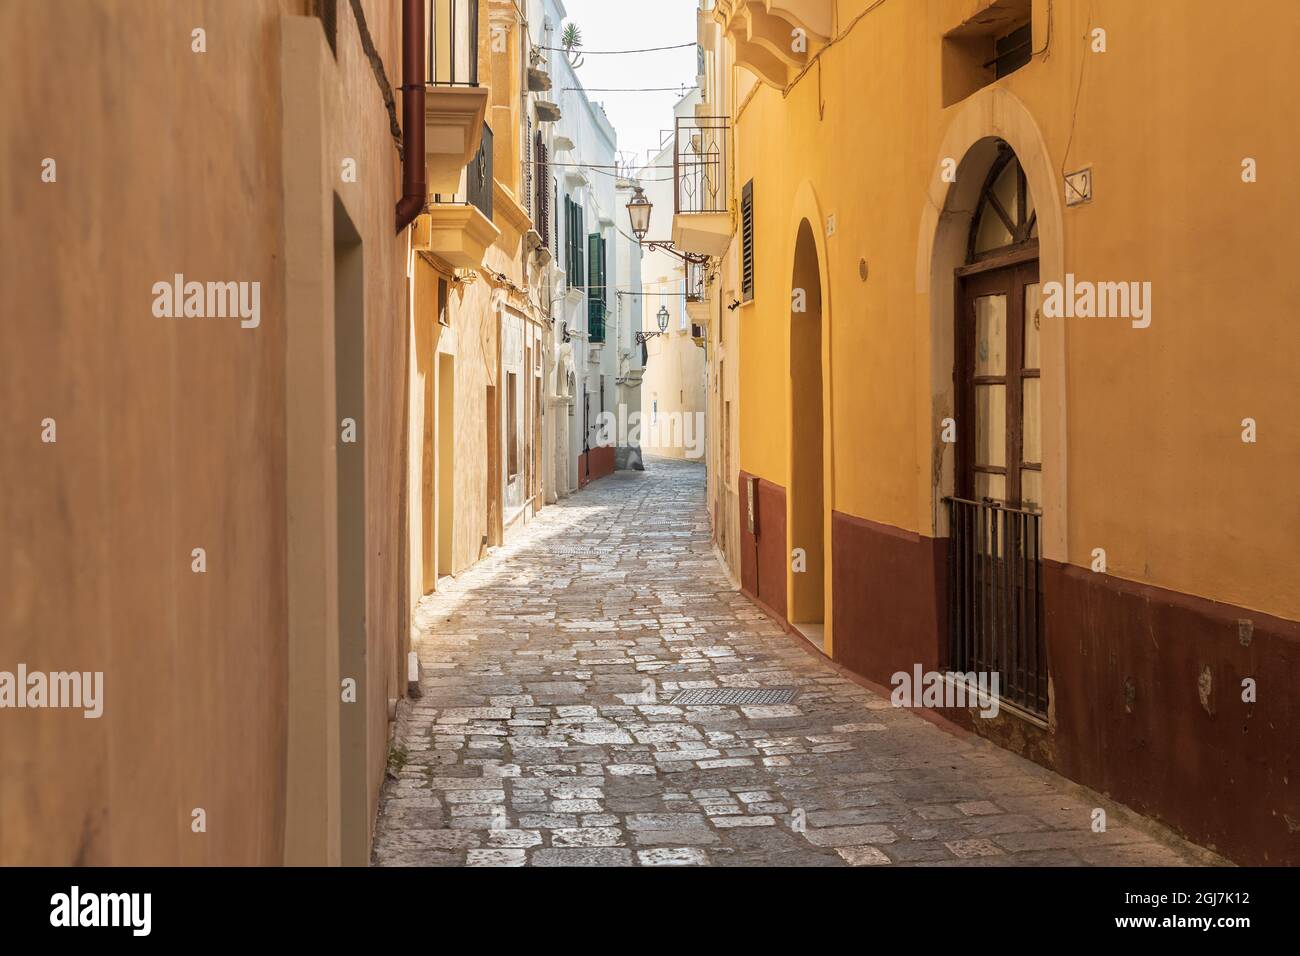 Italia, Apulia, Provincia de Lecce, Gallipoli. Estrecha calle de adoquines. Foto de stock